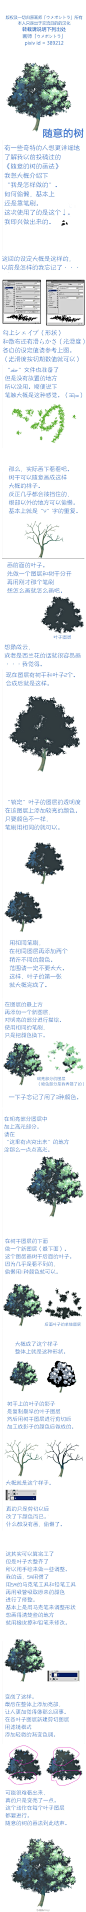 【教程汉化】「画师：ウメボシトラ」【教程汉化】pixiv id =389212 ——树的画法——丨总而言之就是教你怎么（用偷懒的方法）画树。PS：只适用于用Ps画画的，因为笔刷是PS的_(:3。笔刷在百度网盘→【http://t.cn/zRoS3E9】丨原网址：http://t.cn/zWCDcIP

树的画法  树 教程